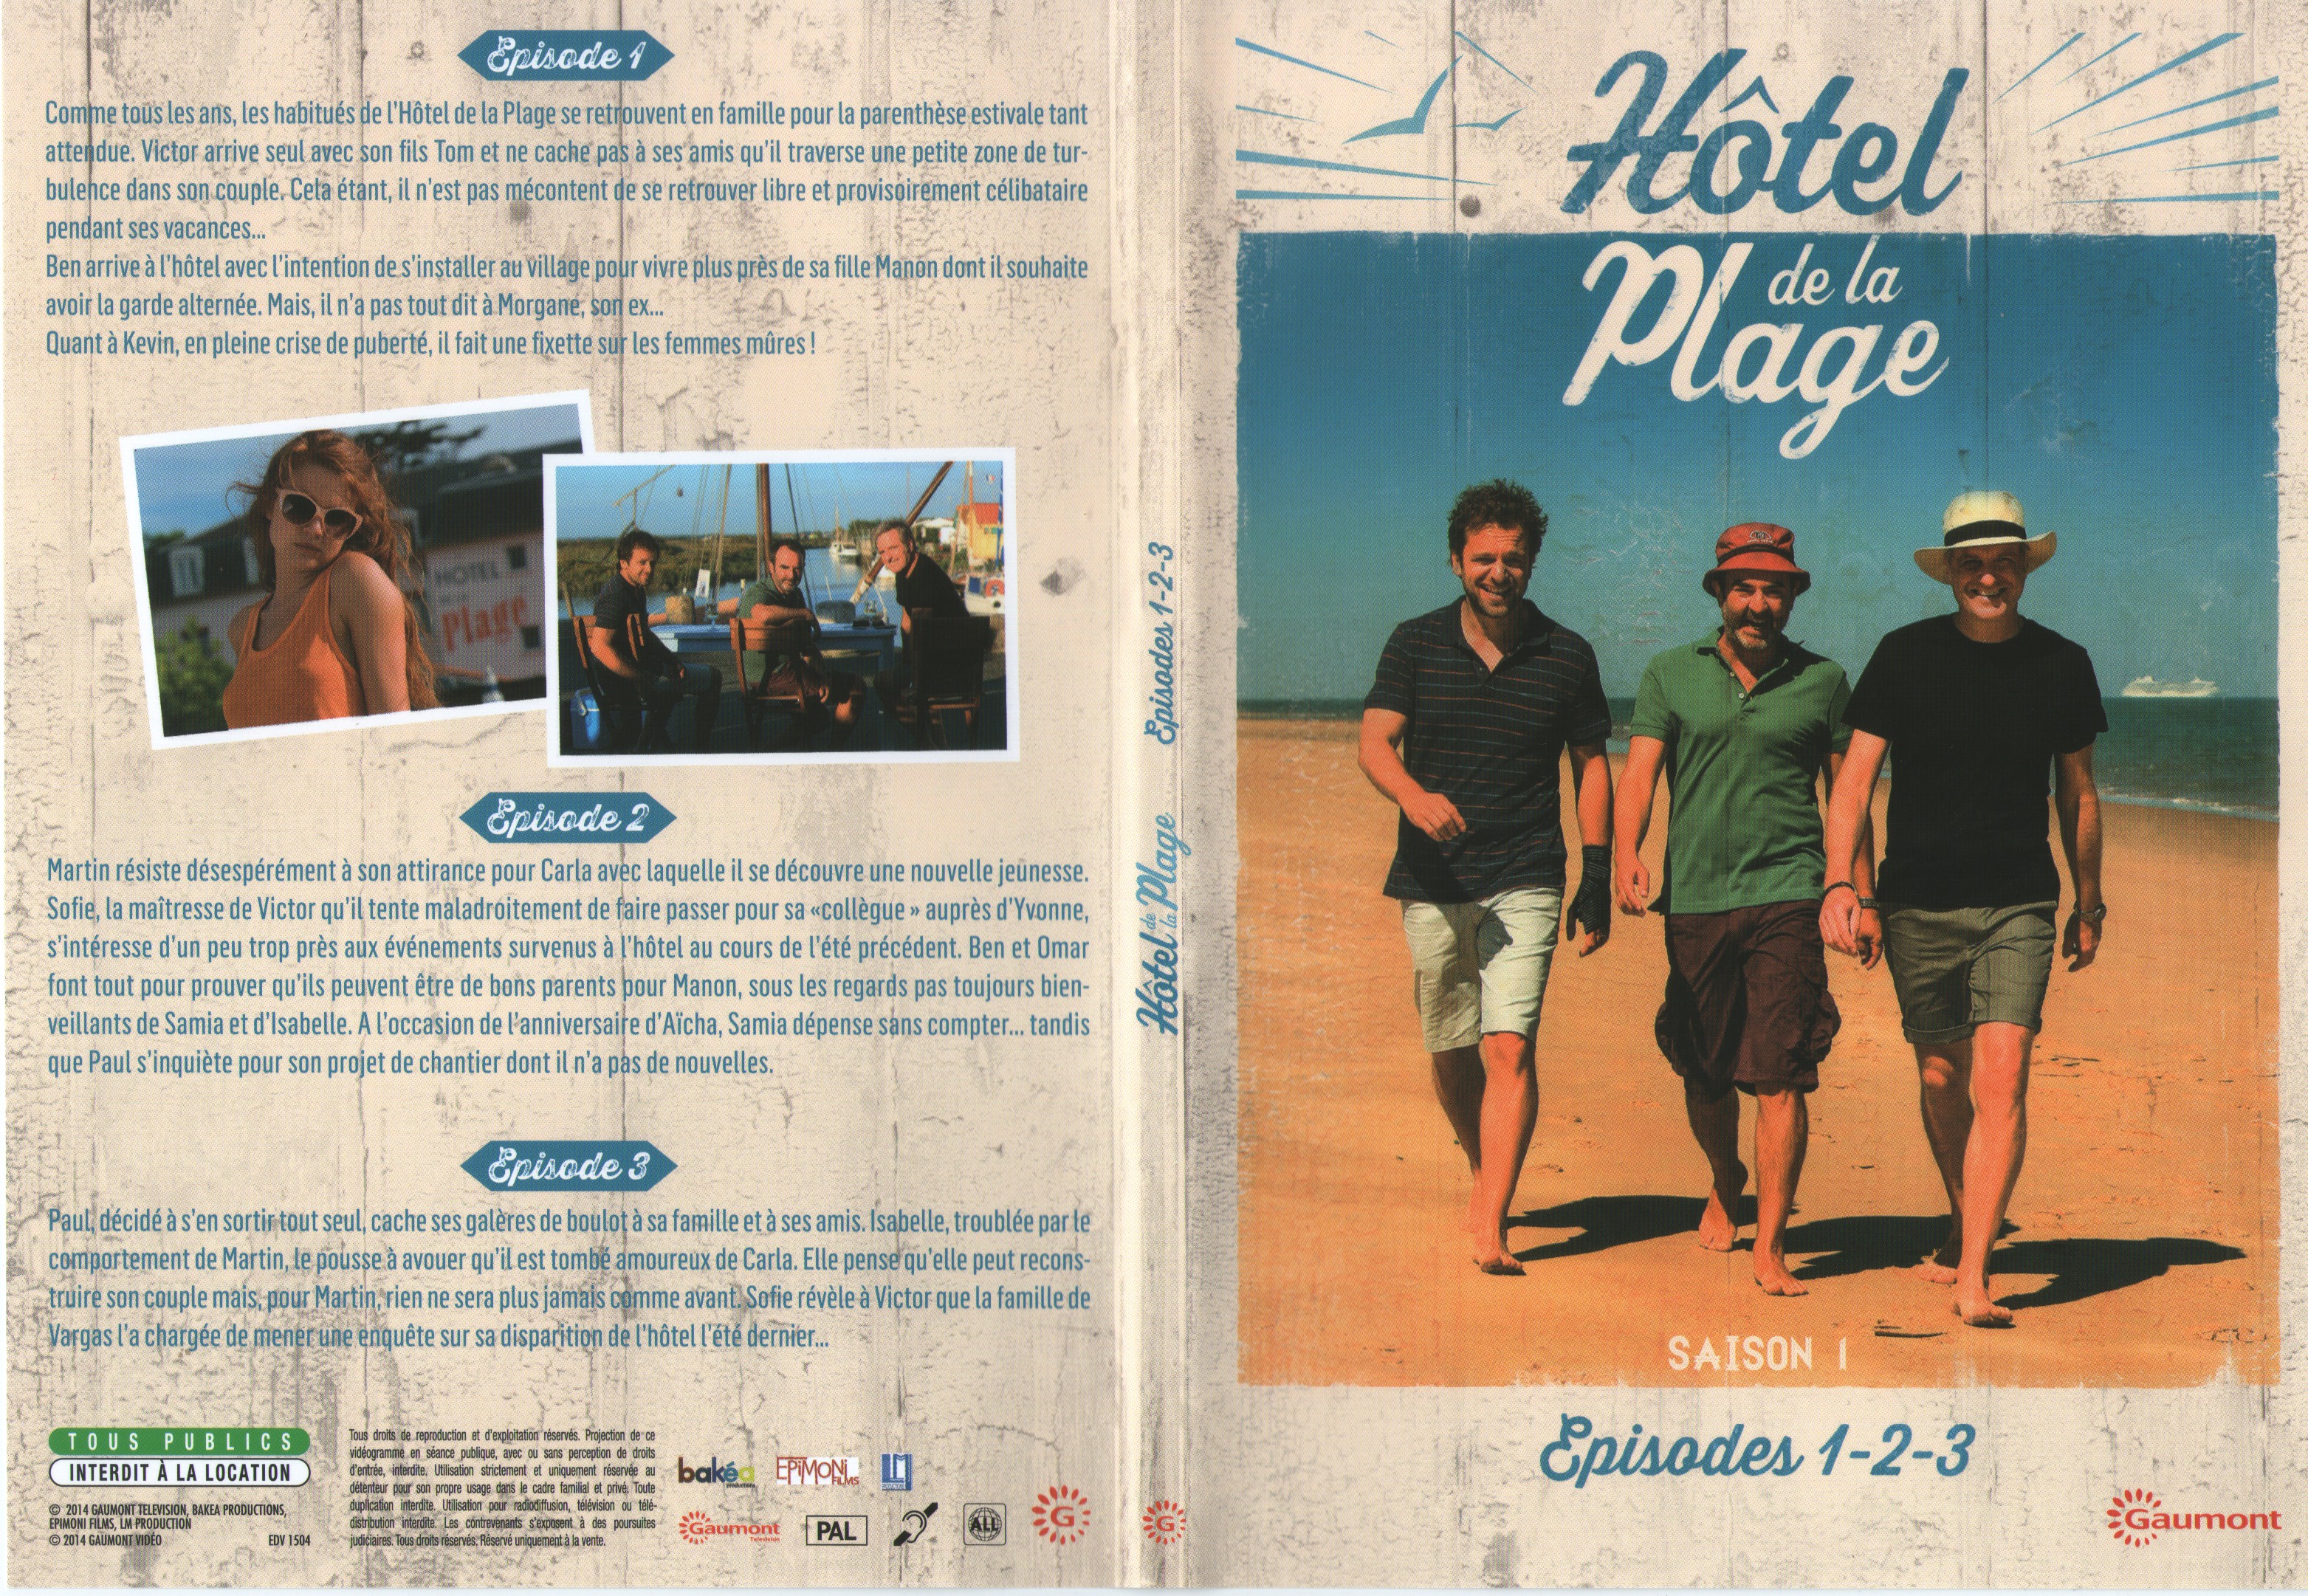 Jaquette DVD Hotel de la plage Saison 1 DVD 1